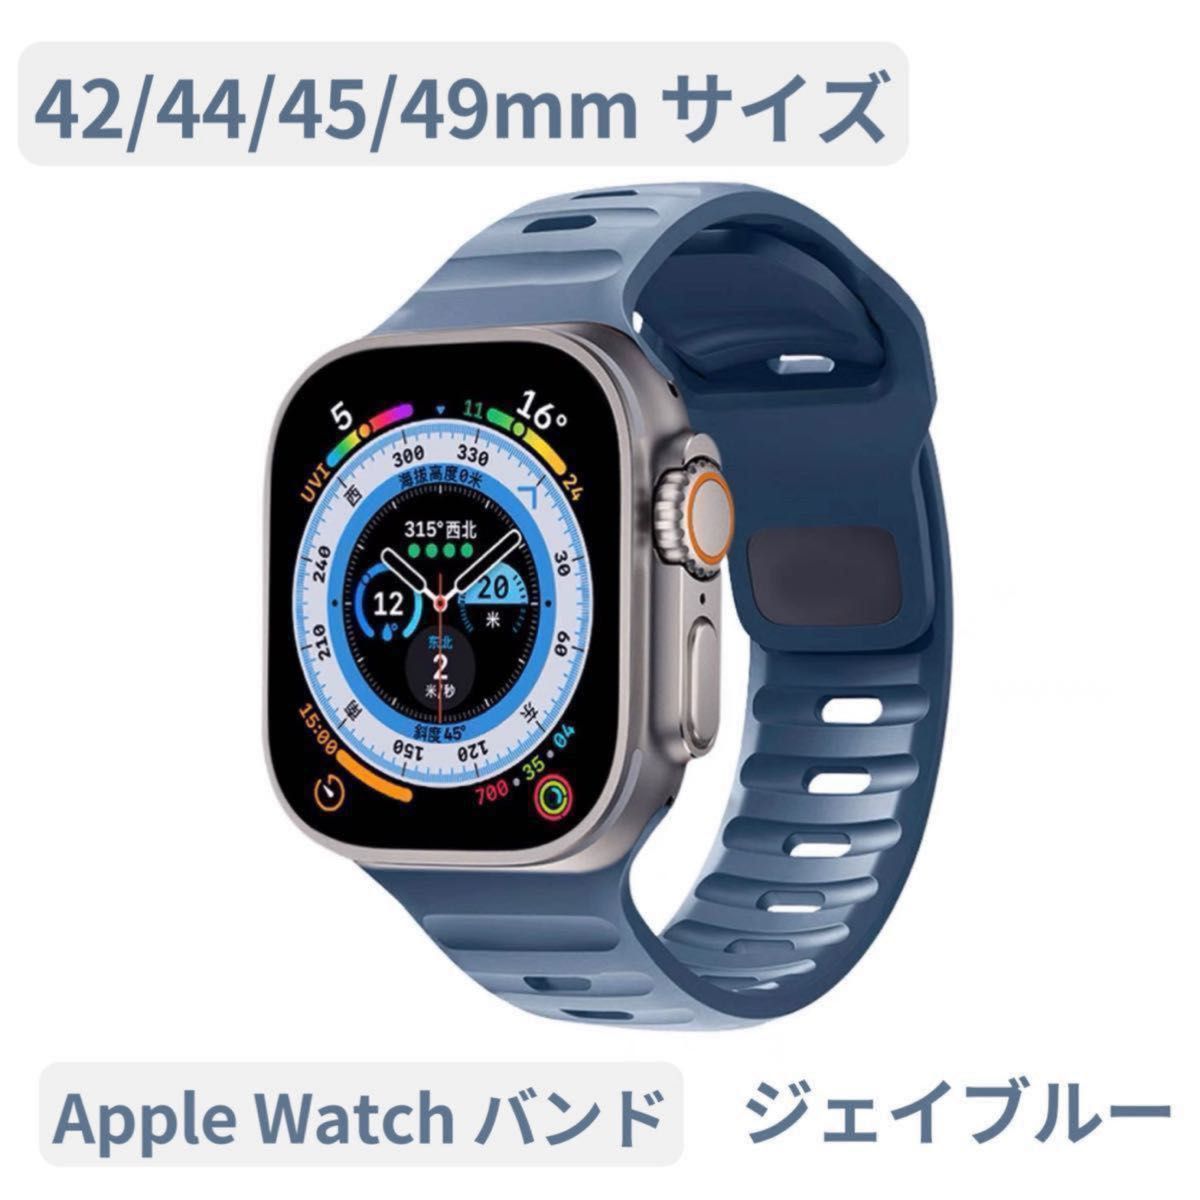 Apple watch band アップルウォッチバンド スポーツバンド 最新 人気 オシャレ ラバーベルト ジェイブルー